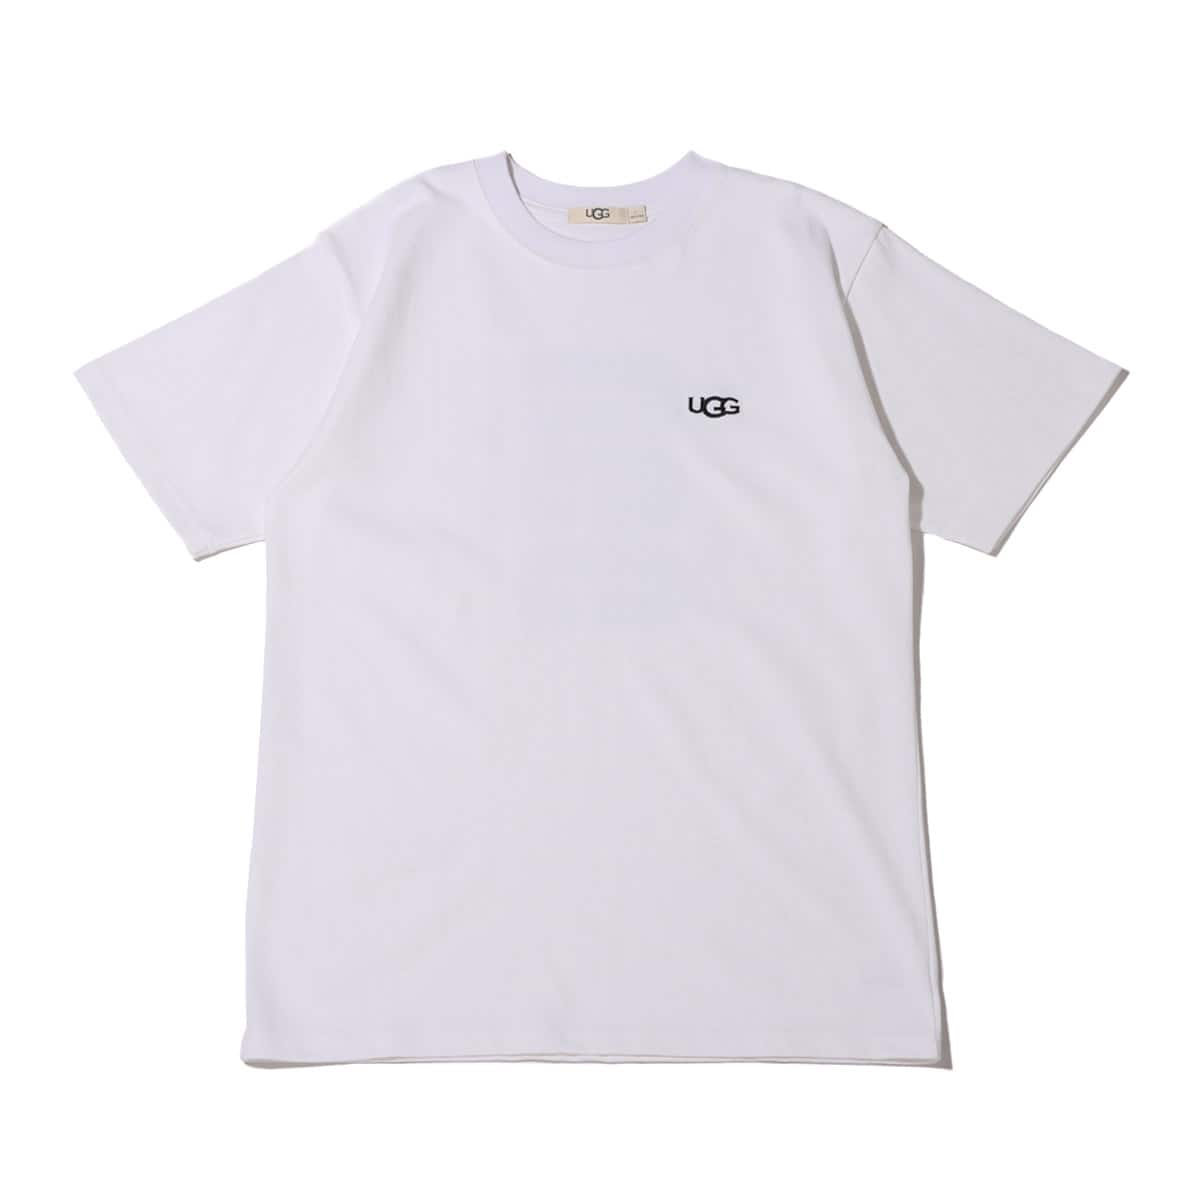 UGG バックビックロゴ Tシャツ WHITE 21FW-I